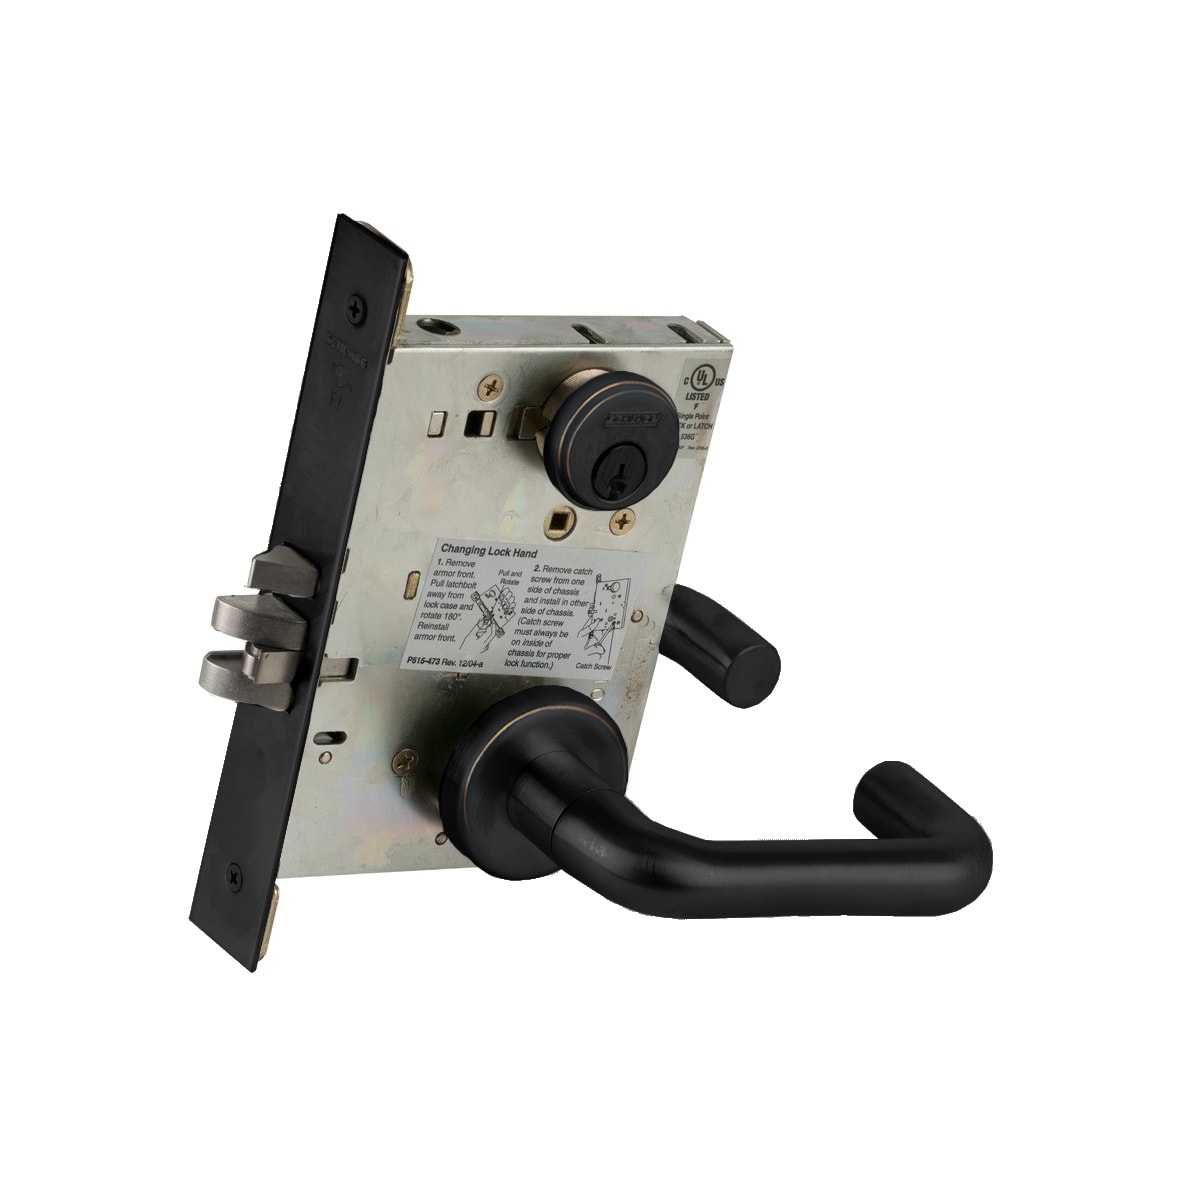 Door Hardware Schlage Commercial L9080LB L283-134 Mortise Lock